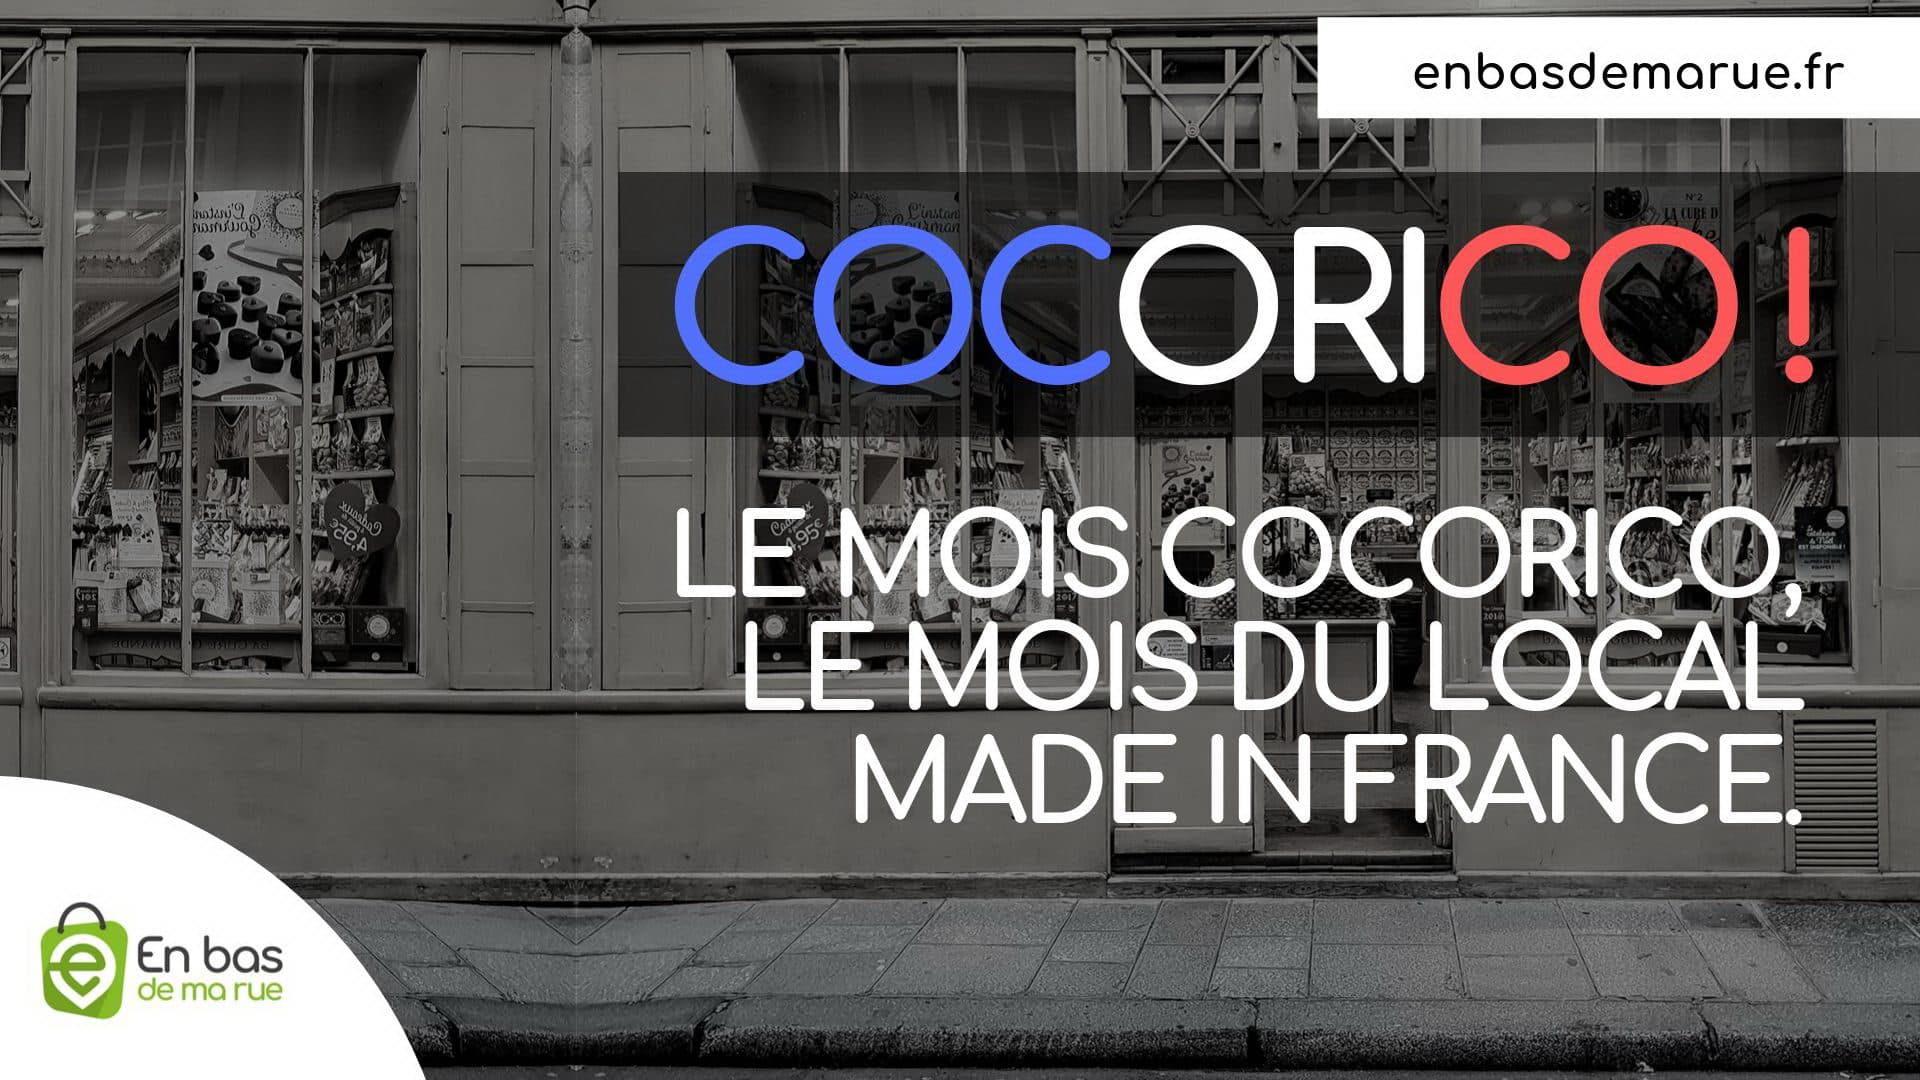 Lire la suite à propos de l’article Cocorico ! Quand Enbasdemarue combine achat local et achat digital